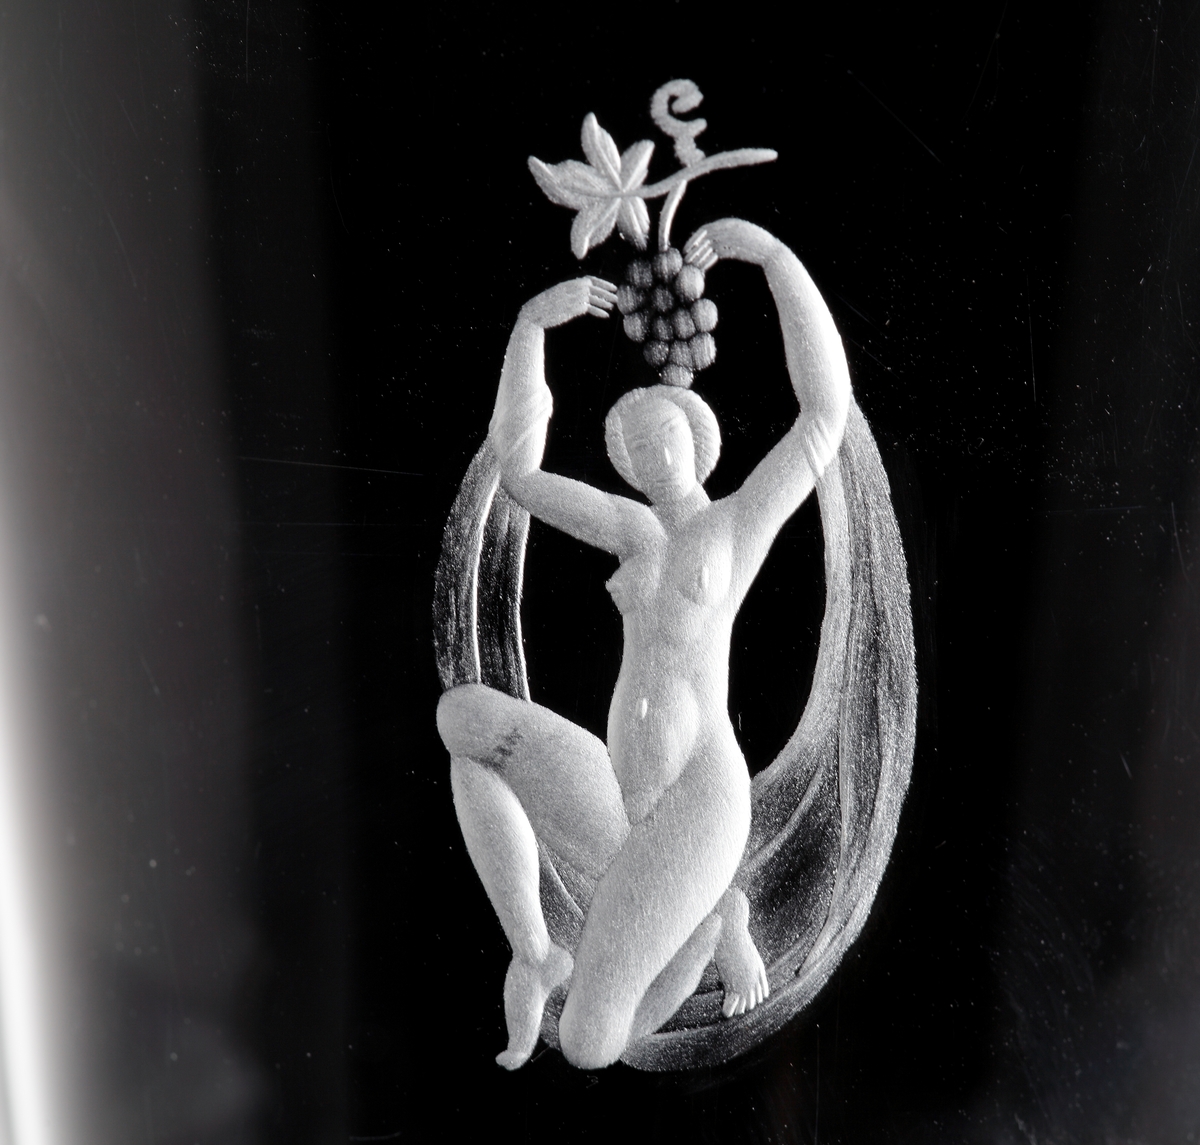 Trumpetformad vas med klack. Graverad med figurmotiv, mattslipad mynningskant samt matt olivslipad dekor på nedre del av vasen. 
Gravör Karl Rössler, verksam vid Orrefors glasbruk 1923-66.